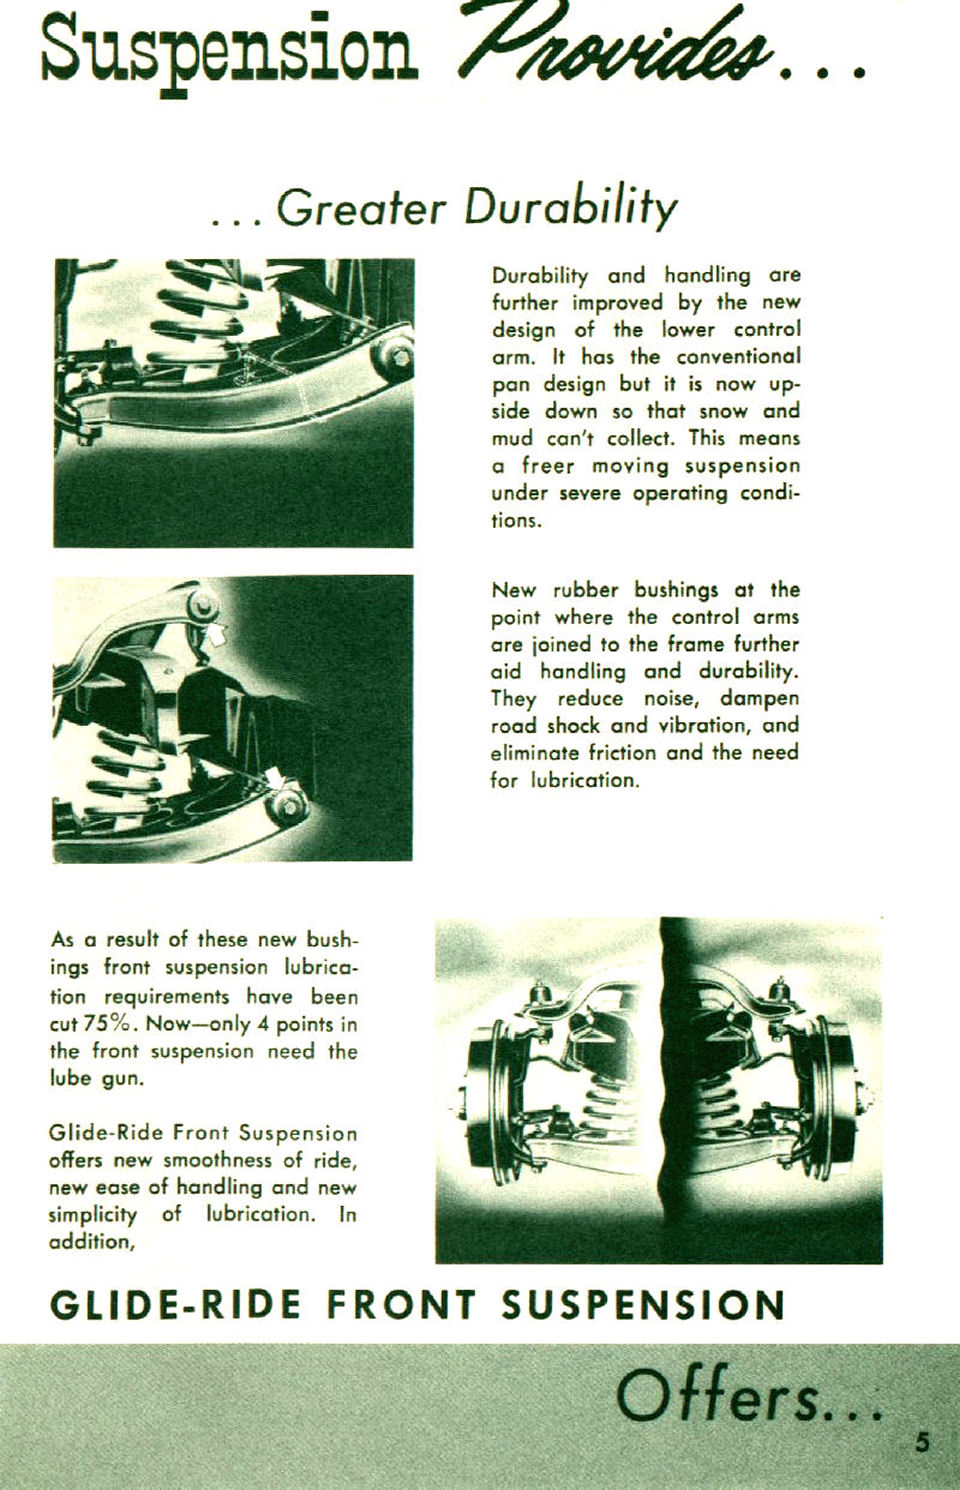 1955_Chevrolet_Third_Era_Booklet-05